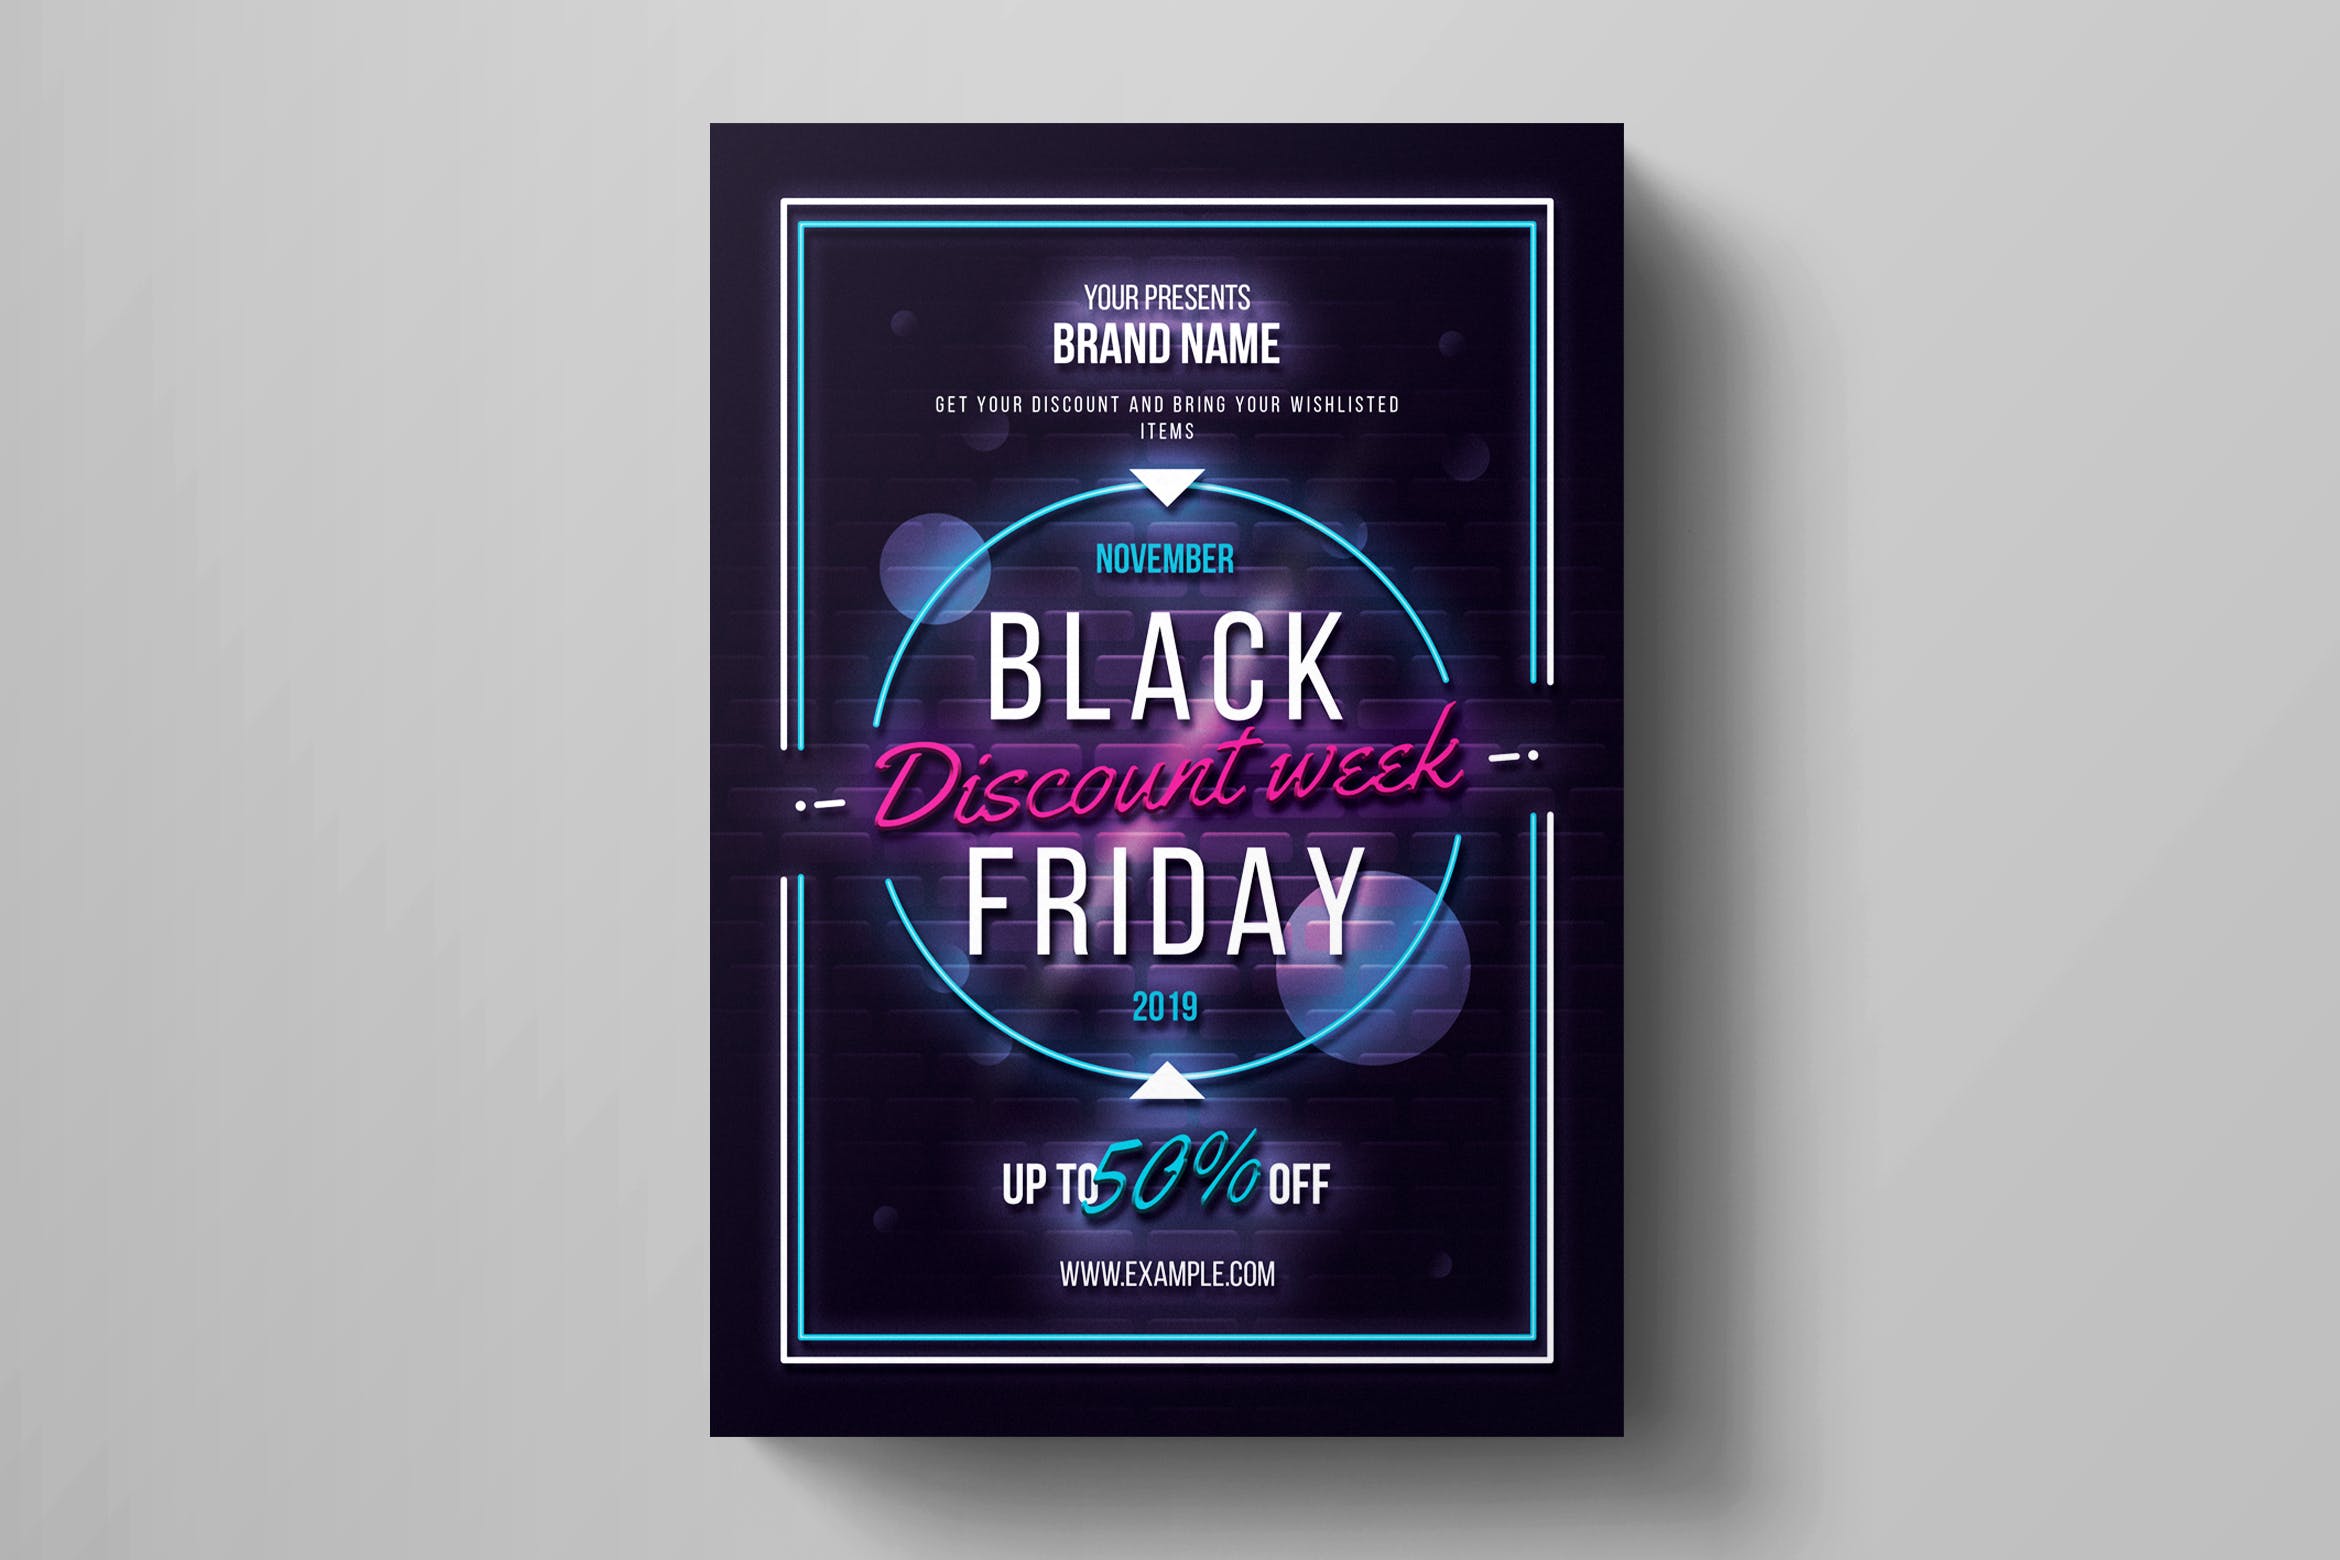 霓虹灯设计风格黑色星期五促销广告海报传单设计模板 Black Friday Flyer Template插图